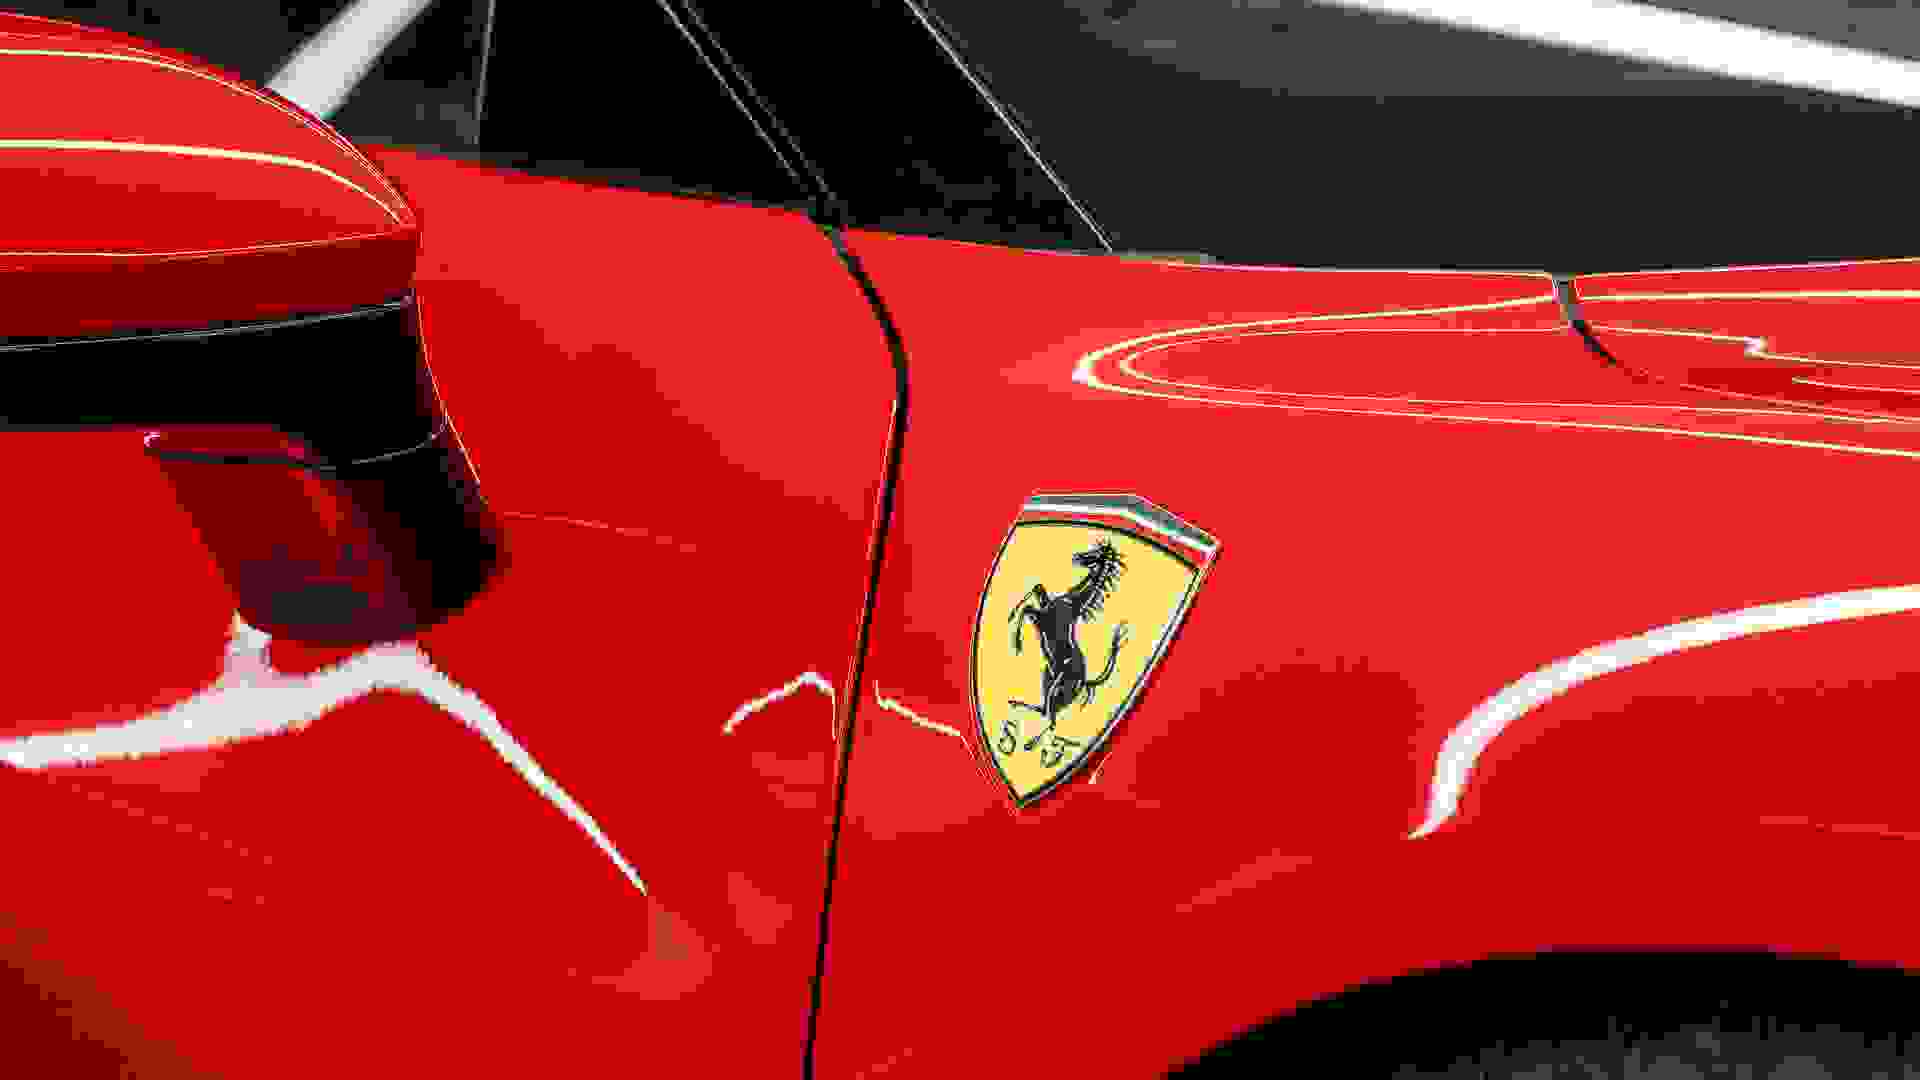 Ferrari 296 Photo 991be8f5-6571-4913-9411-f88952dcceff.jpg